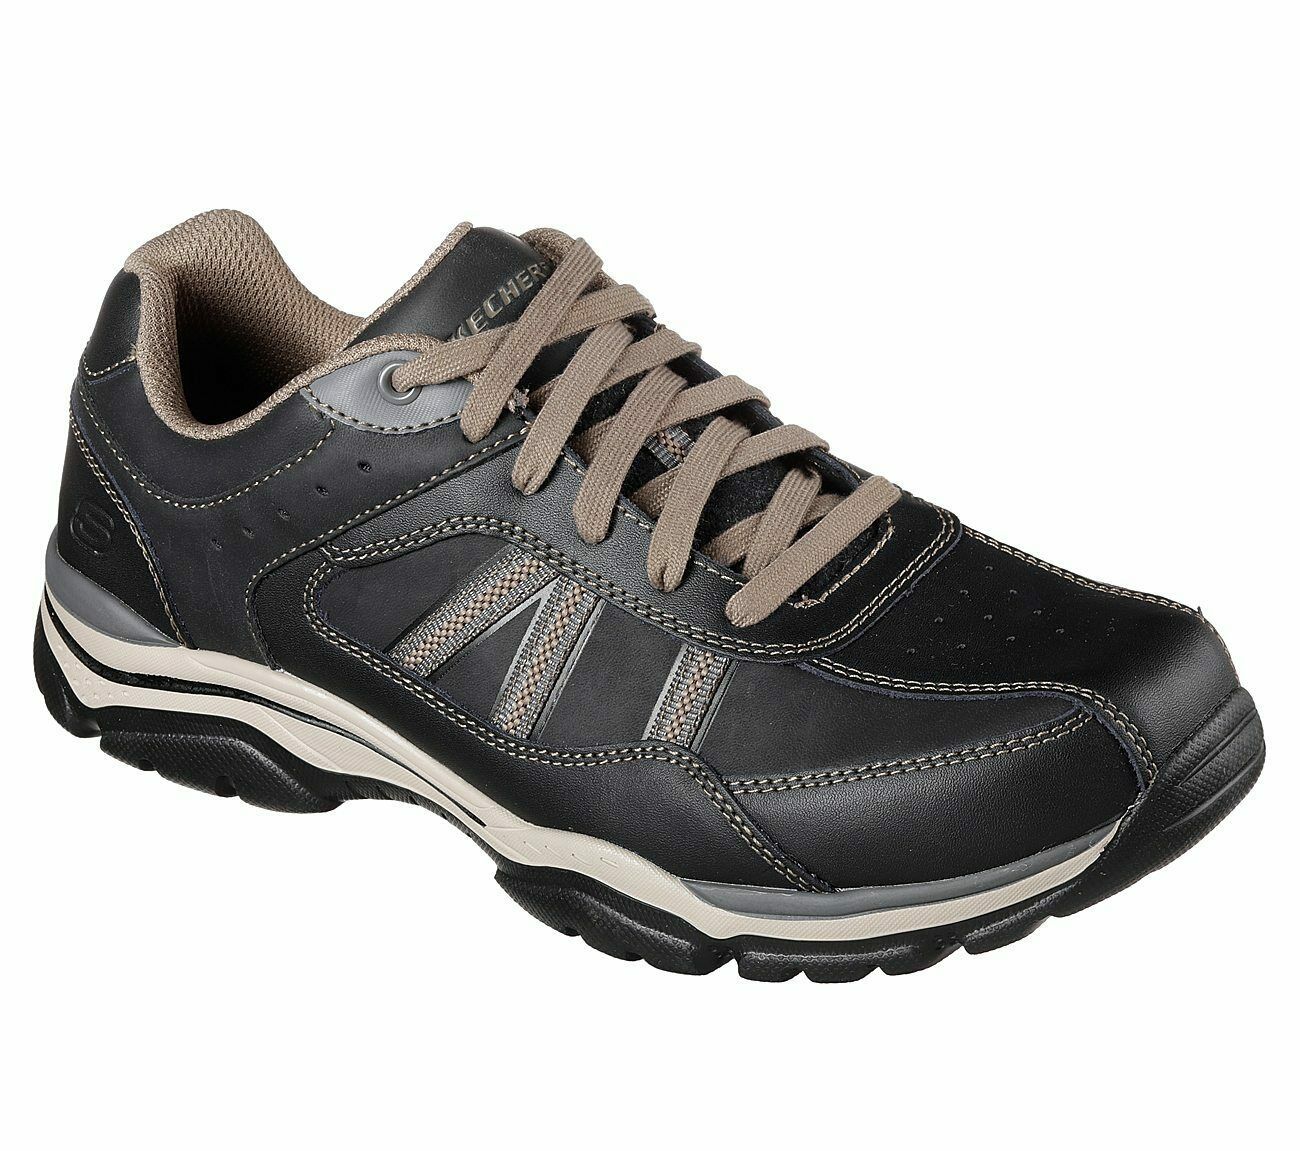 Skechers Extra Wide Fit Black shoes Men Memory Foam Sporty Casual ...